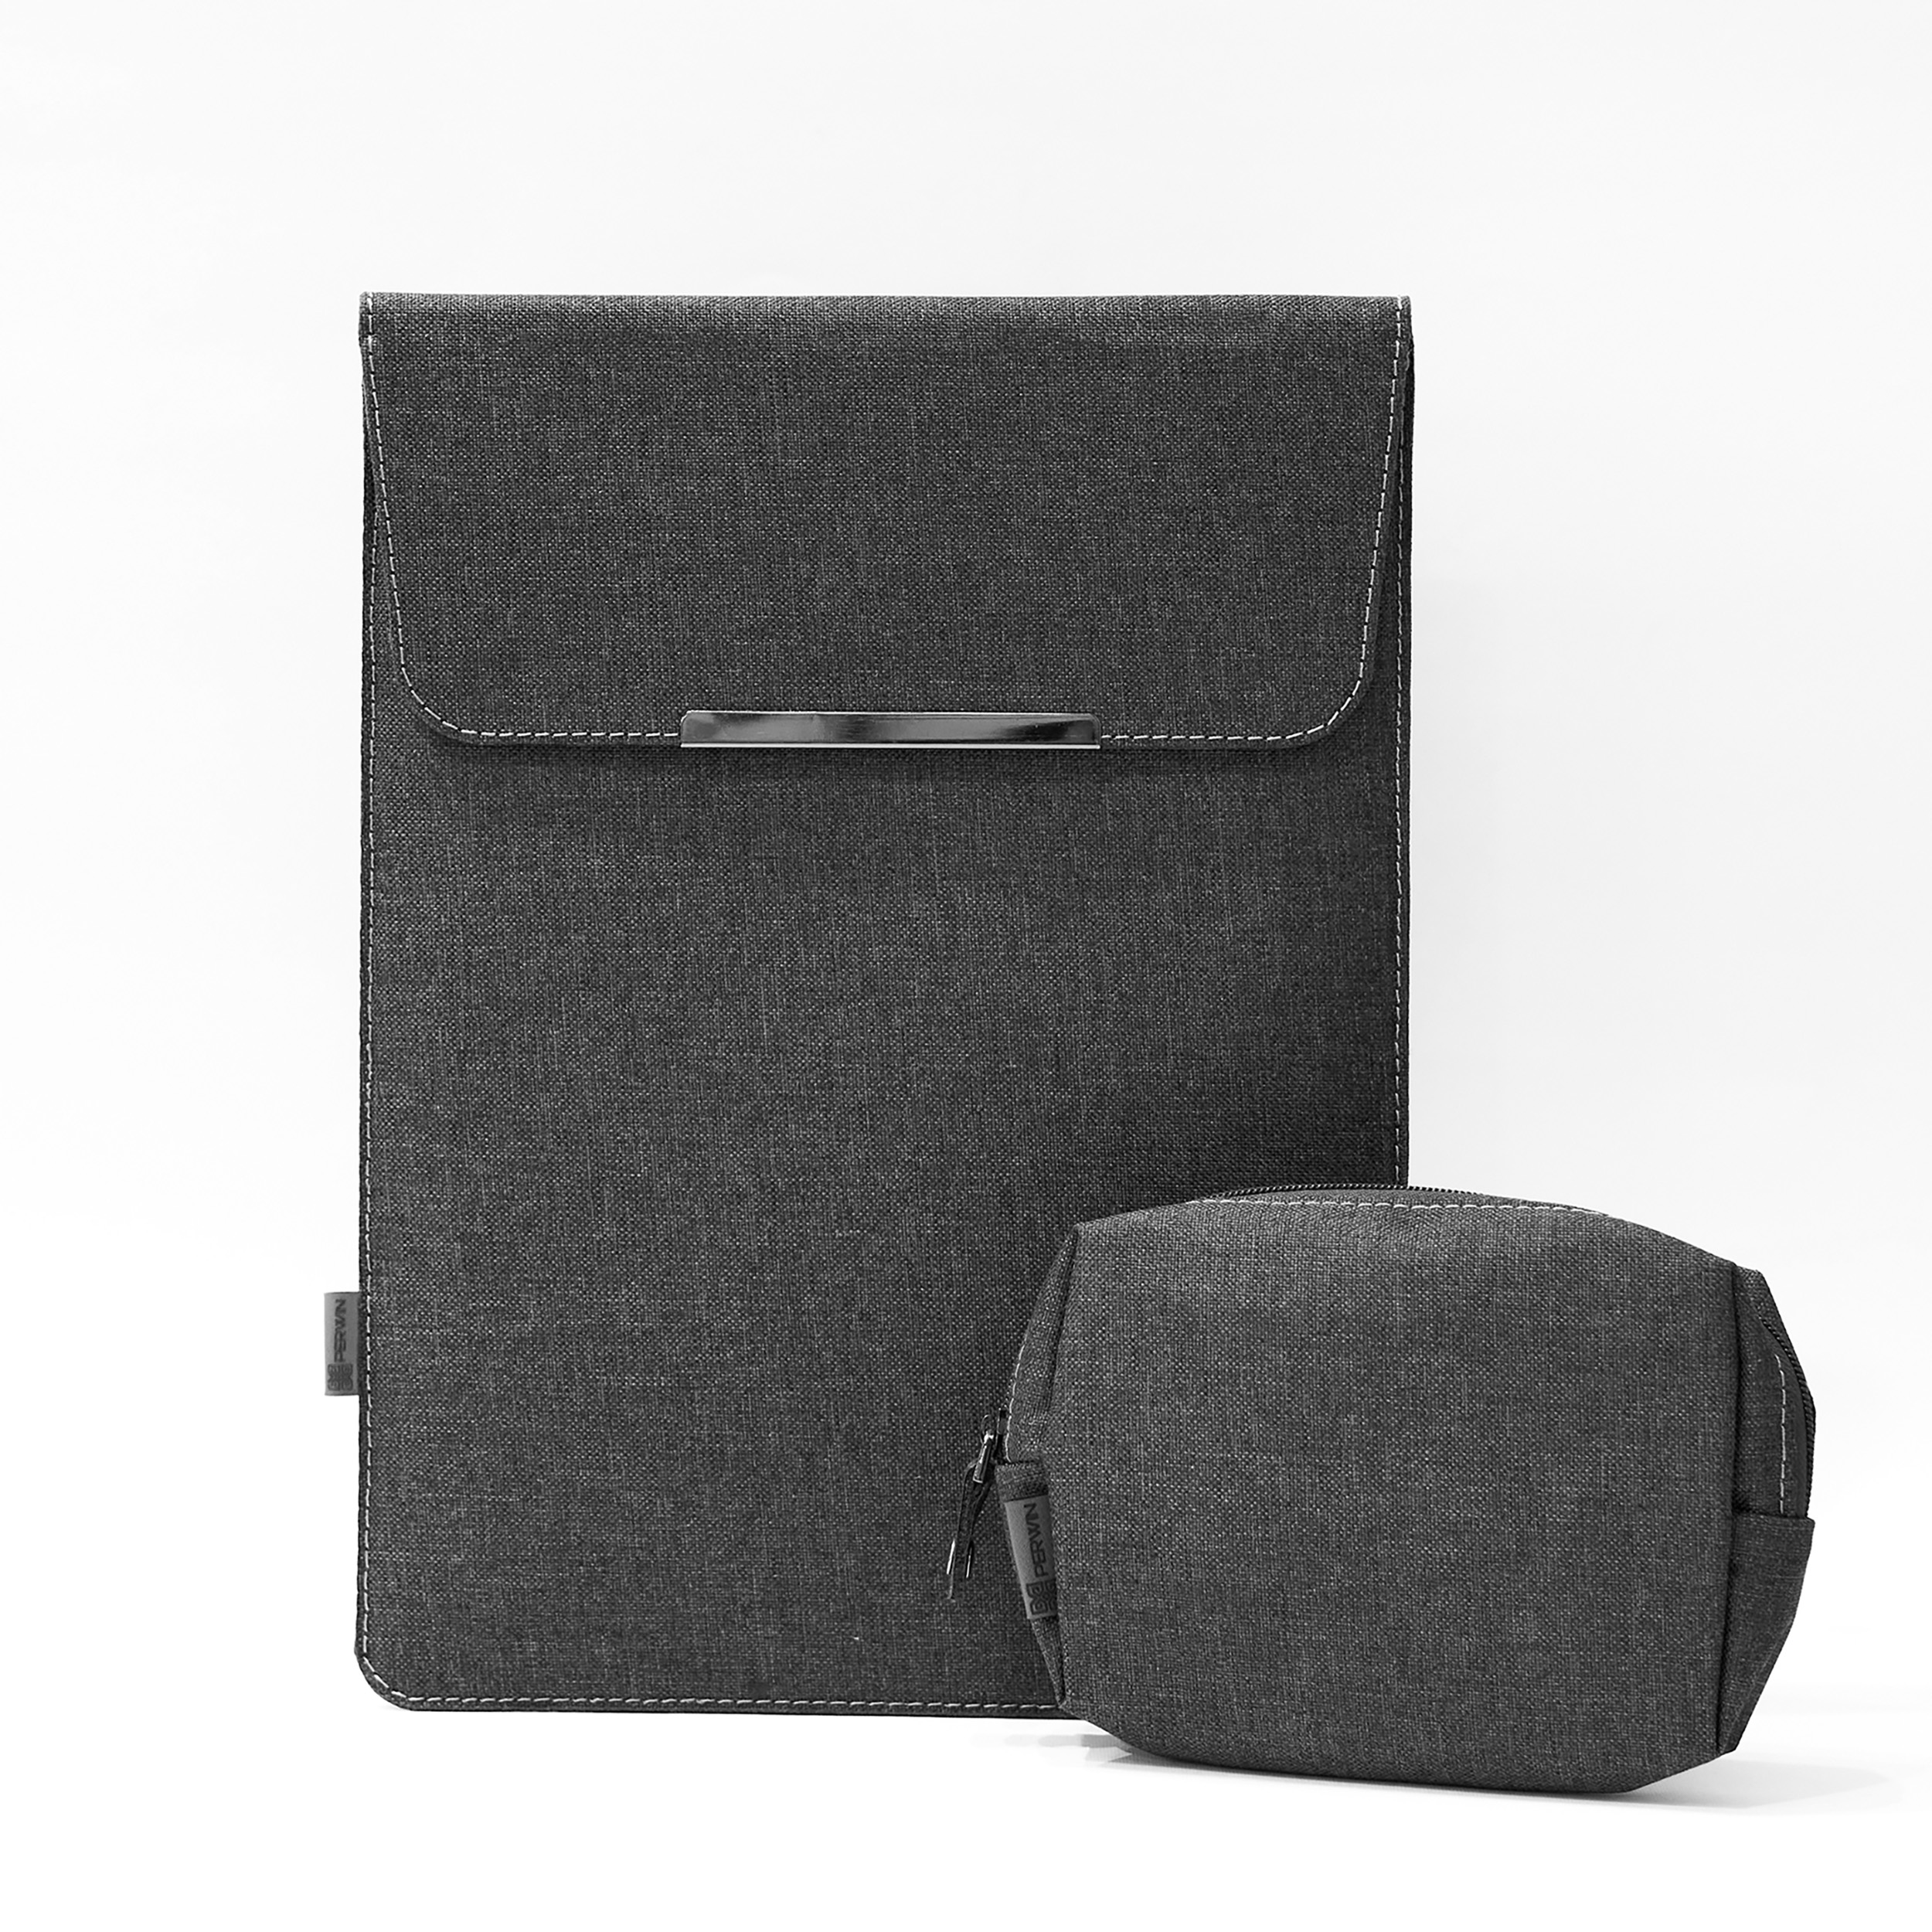 کاور لپ تاپ پِروین مدل LD-31 مناسب برای لپ تاپ سرفیس 13 اینچی به همراه کیف لوازم جانبی